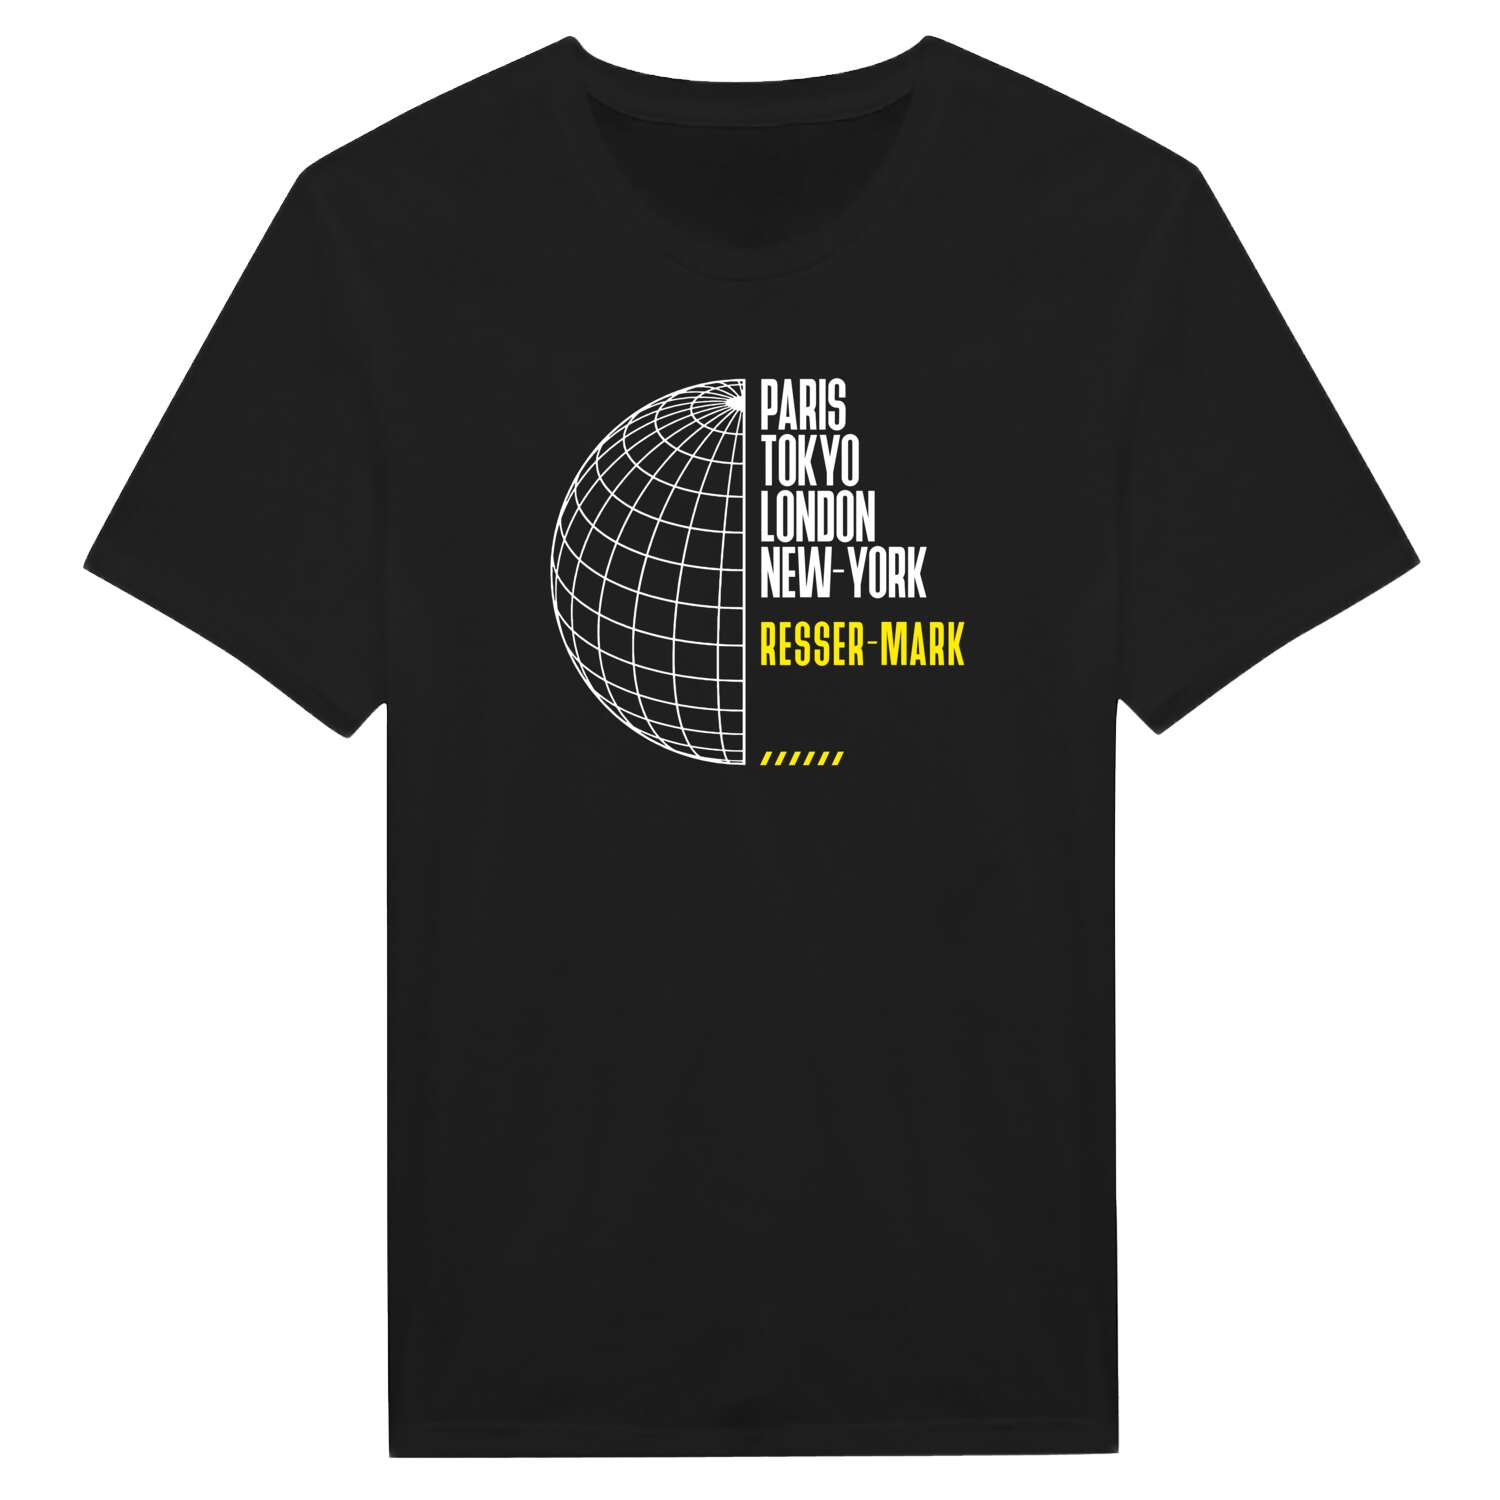 Resser-Mark T-Shirt »Paris Tokyo London«